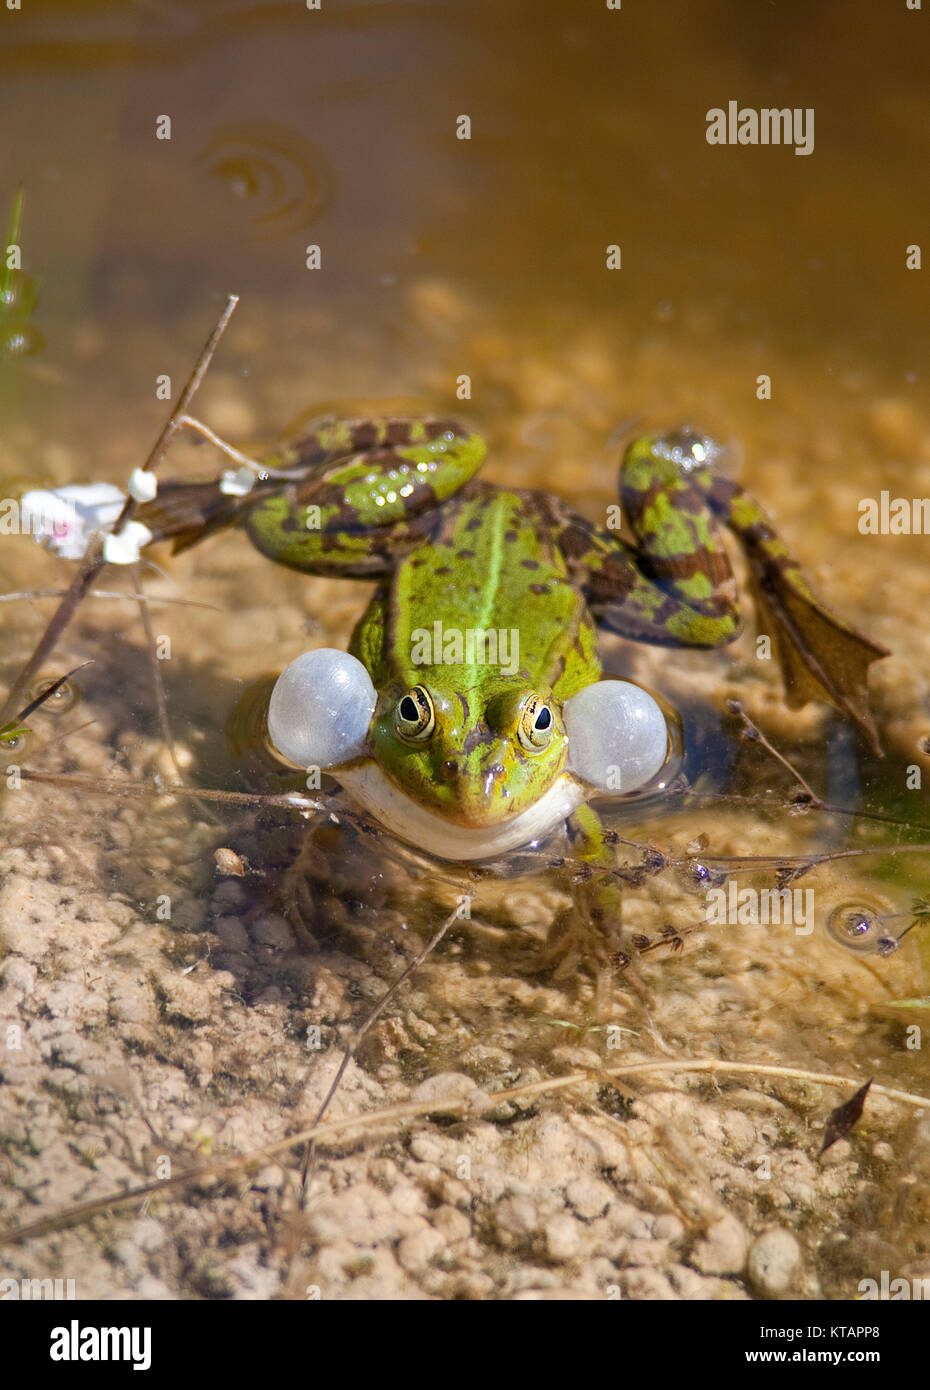 Wasserfrosch, gemeinsame Wasser Frosch (Rana kl. esculenta), auch genannt grünen Frosch, in einem Teich in Middelhagen, mönchgut, Insel Rügen, Ostsee, Deutschland Stockfoto